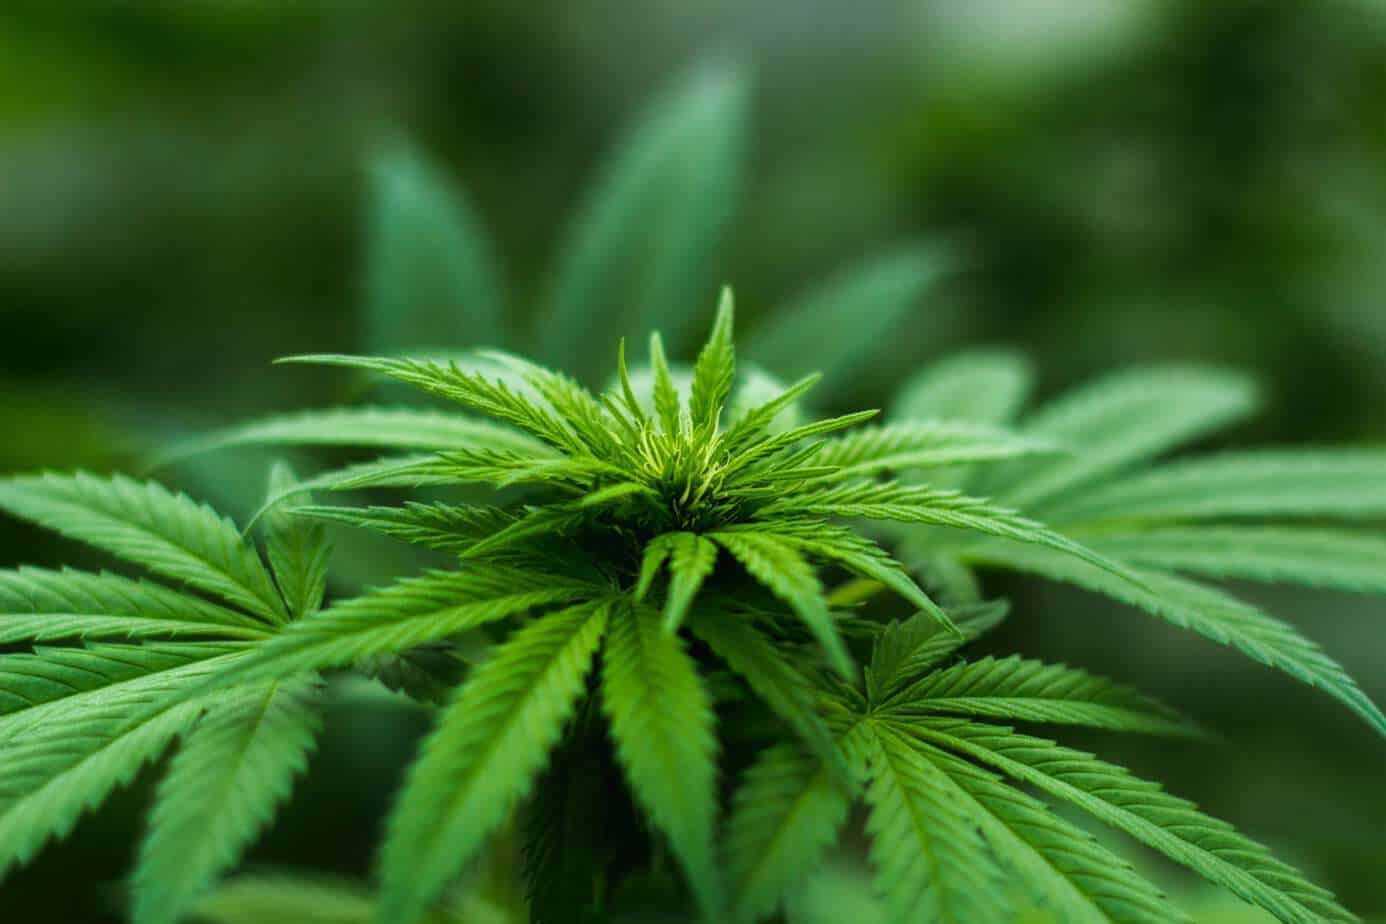 Joven de 23 años es detenido por tener 4 plantas de marihuana en Yumbel